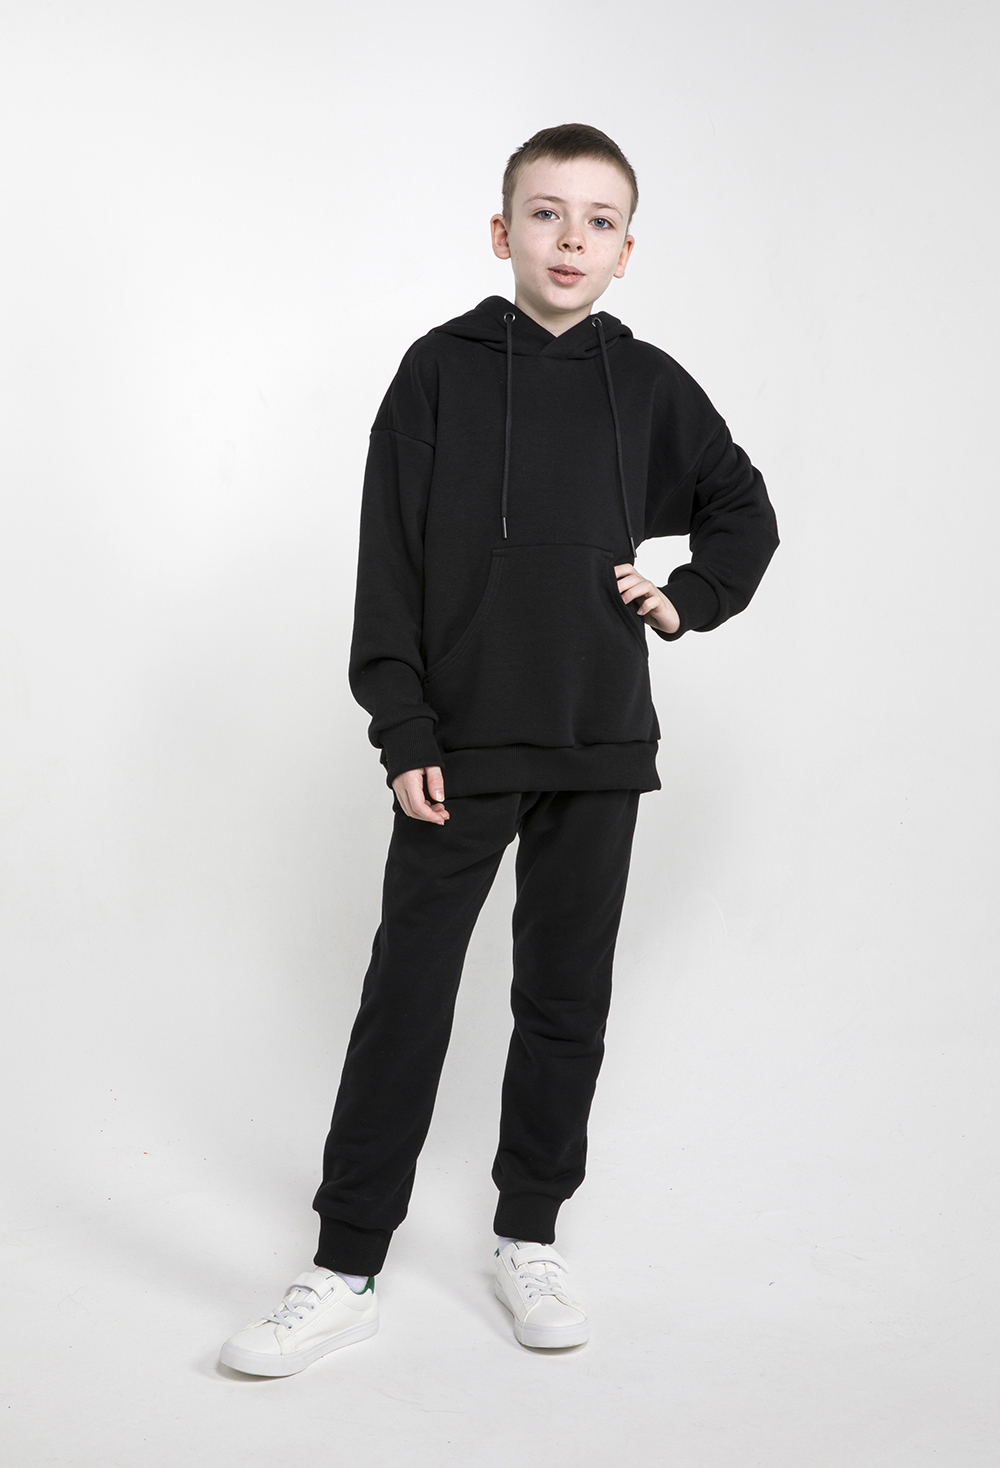 Детский спортивный костюм, МаdbаТ, к0004, р.146, цв. черный